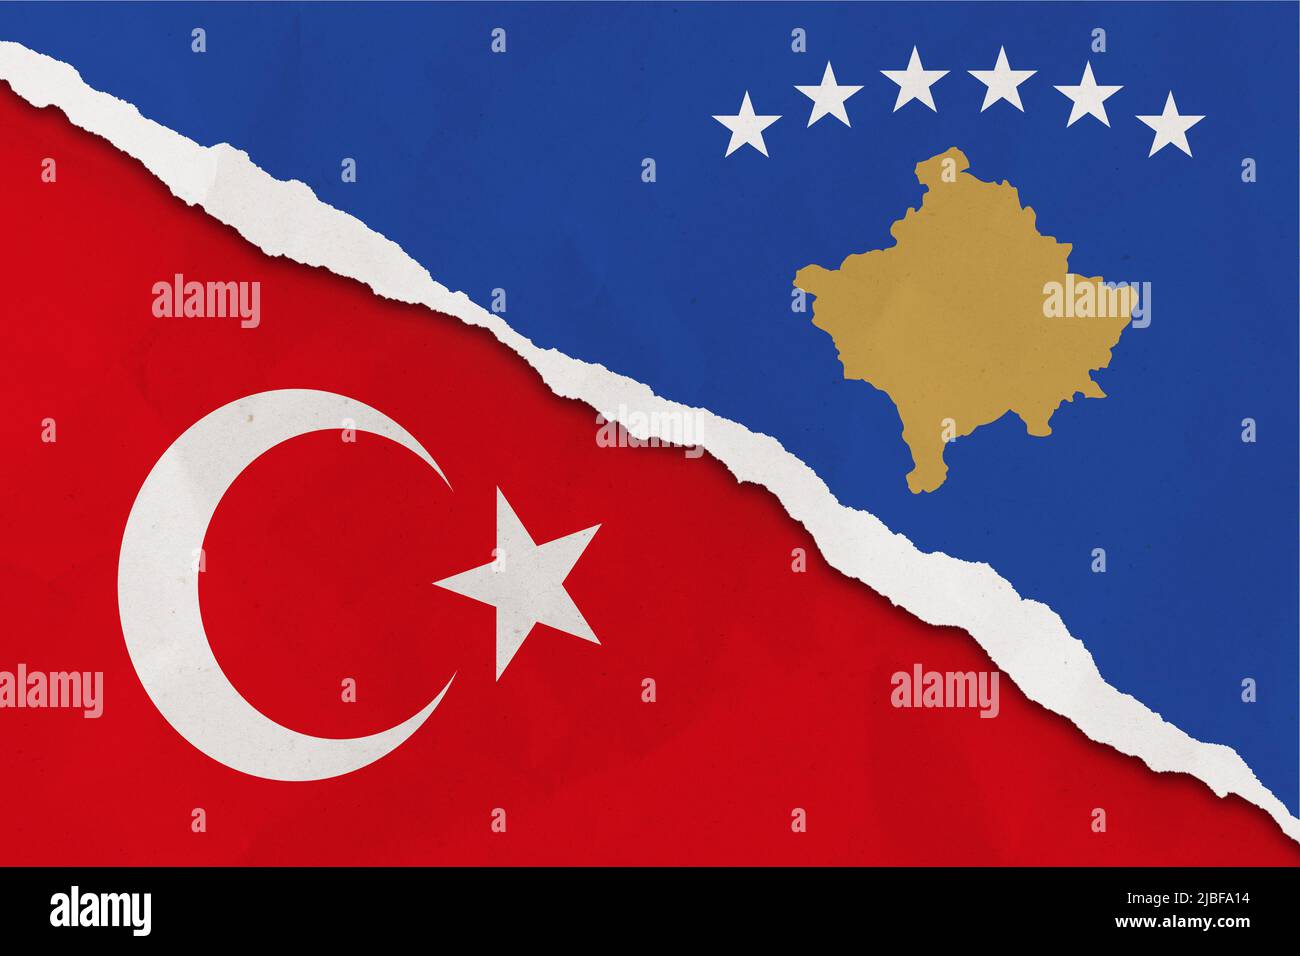 https://c8.alamy.com/compde/2jbfa14/kosovo-und-turkei-flagge-zerrissene-papier-grunge-hintergrund-abstract-kosovo-und-turkei-wirtschaft-politische-konflikte-kriegskonzept-texturhintergrund-2jbfa14.jpg